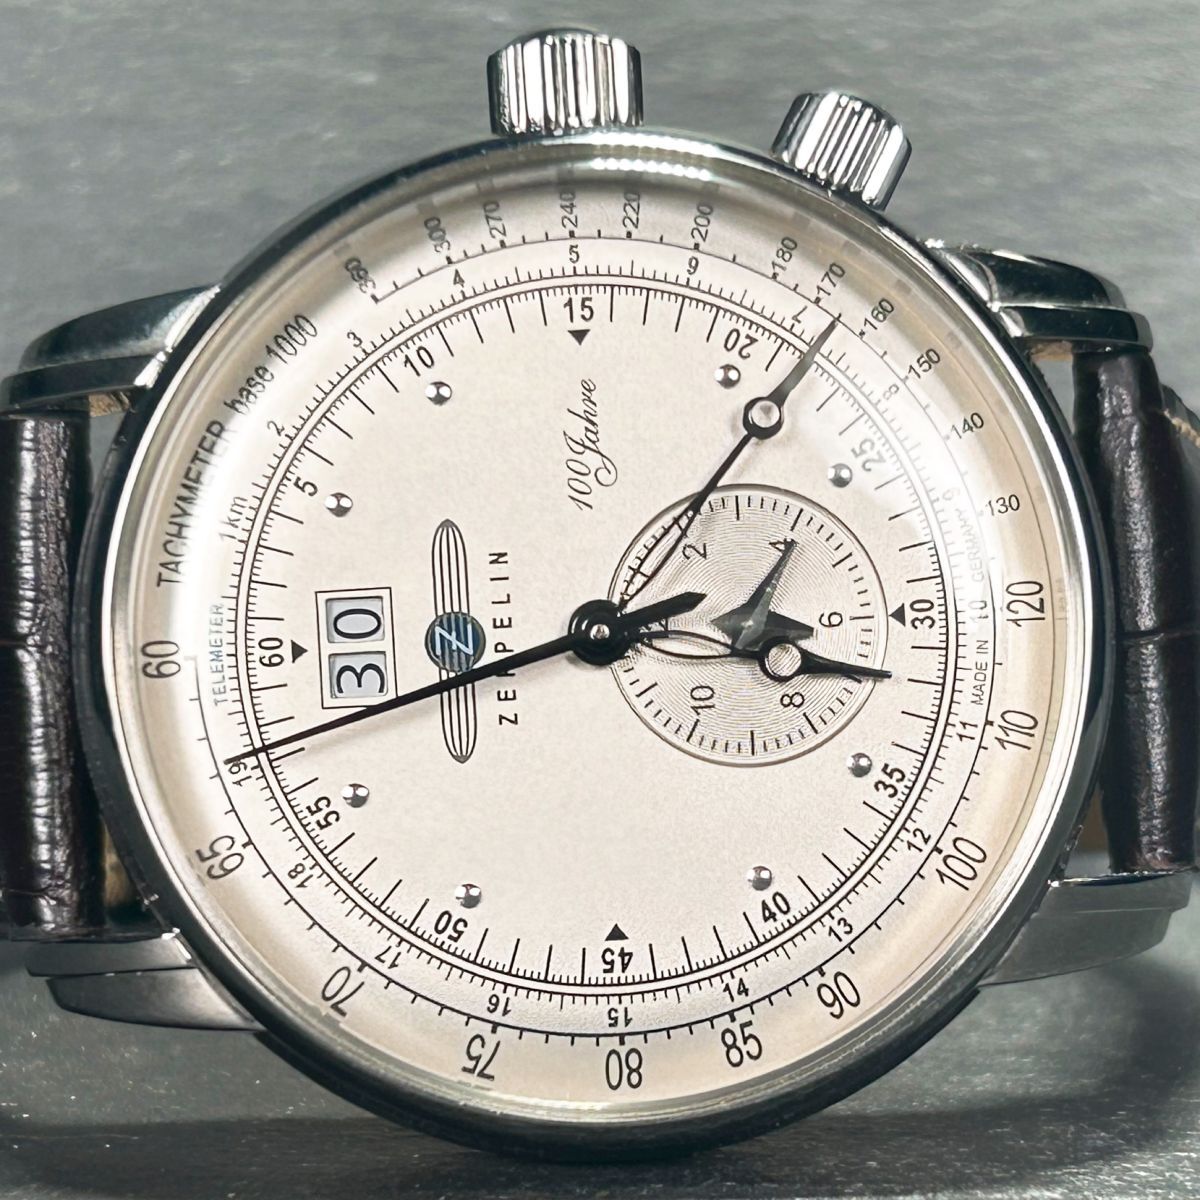 100周年記念限定モデル 新品 Zeppelin ツェッペリン 7640-1N 腕時計 クオーツ アナログ デュアルタイム ビッグデイト メンズ レザーベルト_画像4